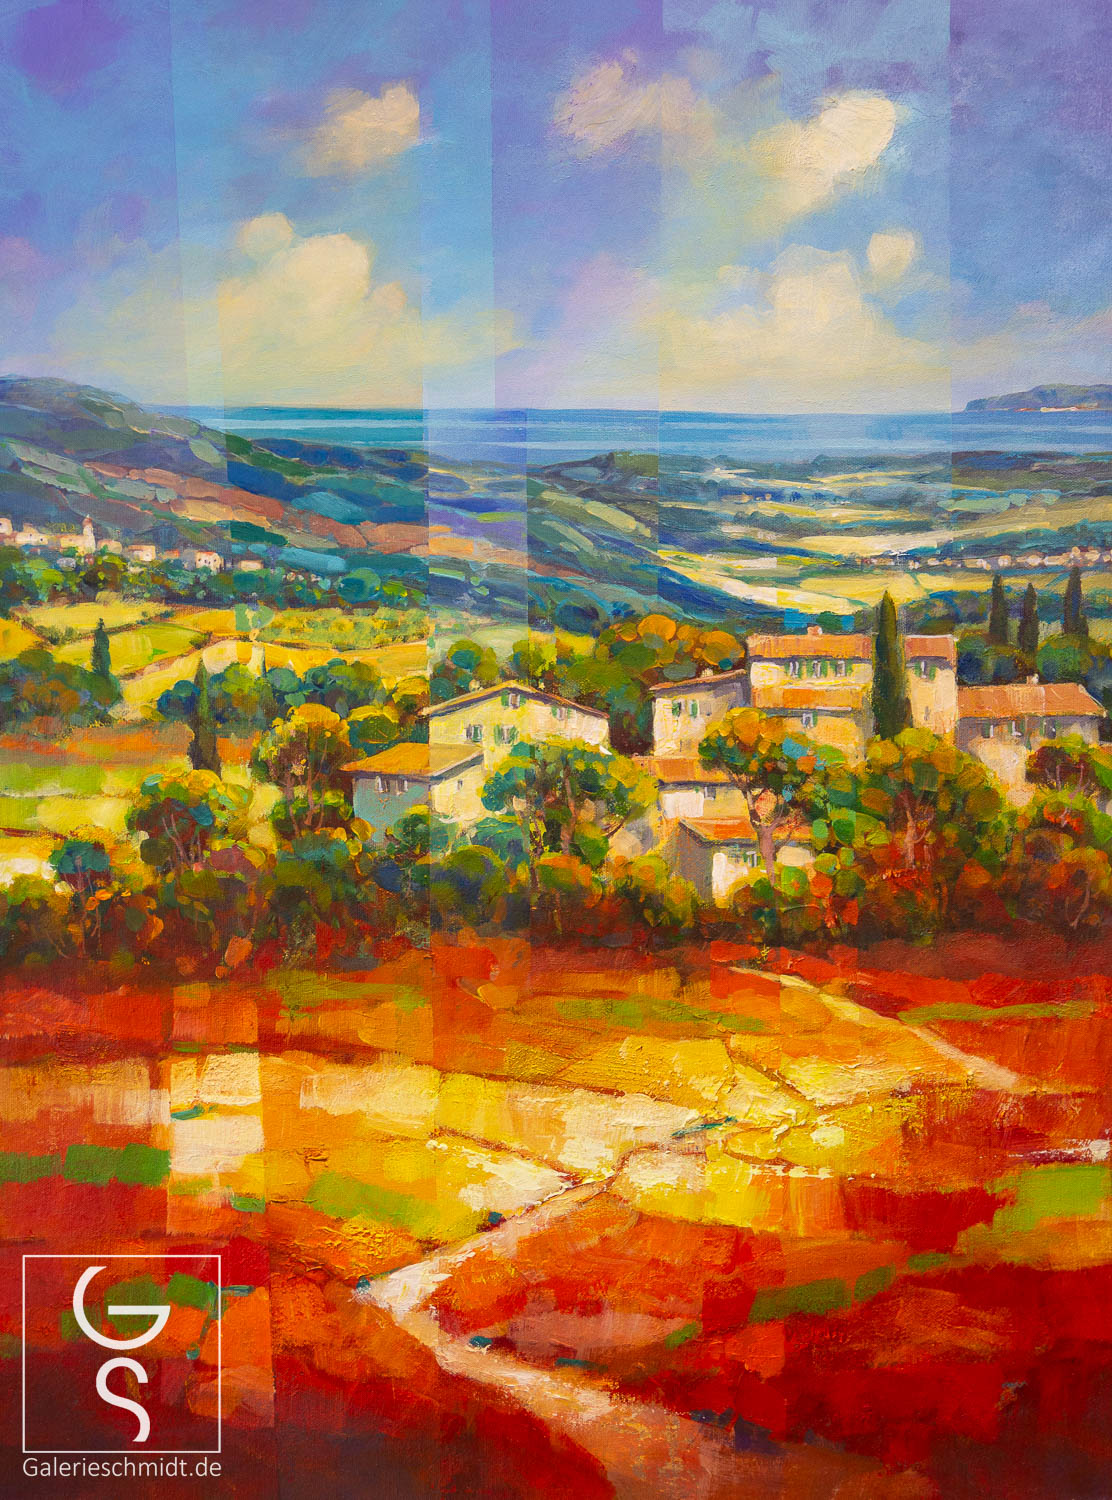 Dorf in leuchtender Landschaft von Jean-Claude Picard, mediterranes leuchtendes Gemälde in Acryl auf Leinwand.